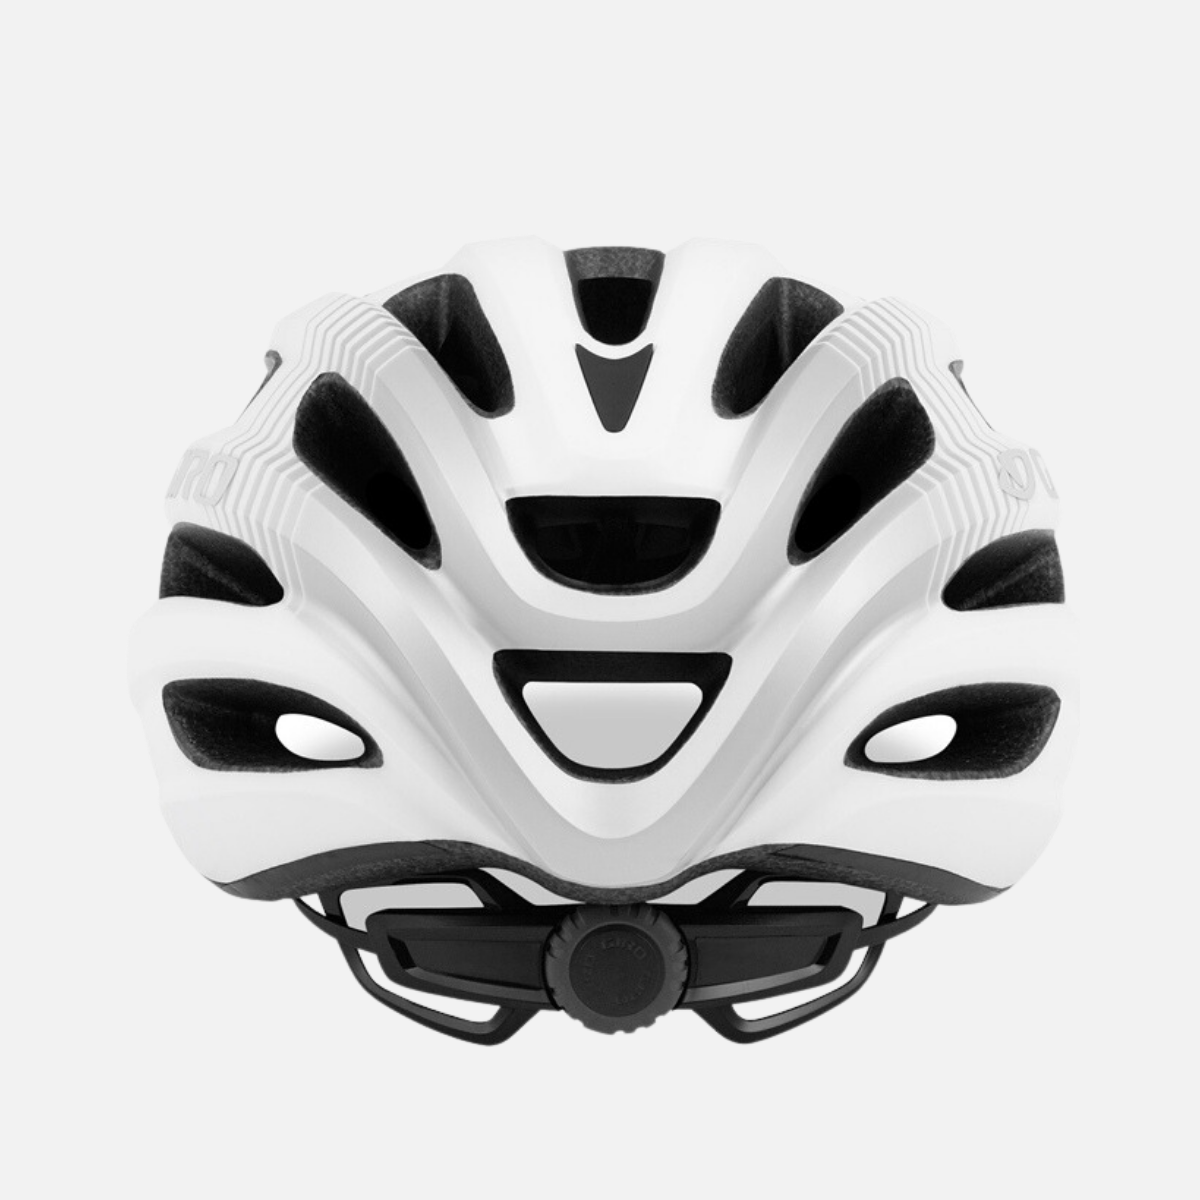 GIRO Road Bike Helmet Isode -Matte White